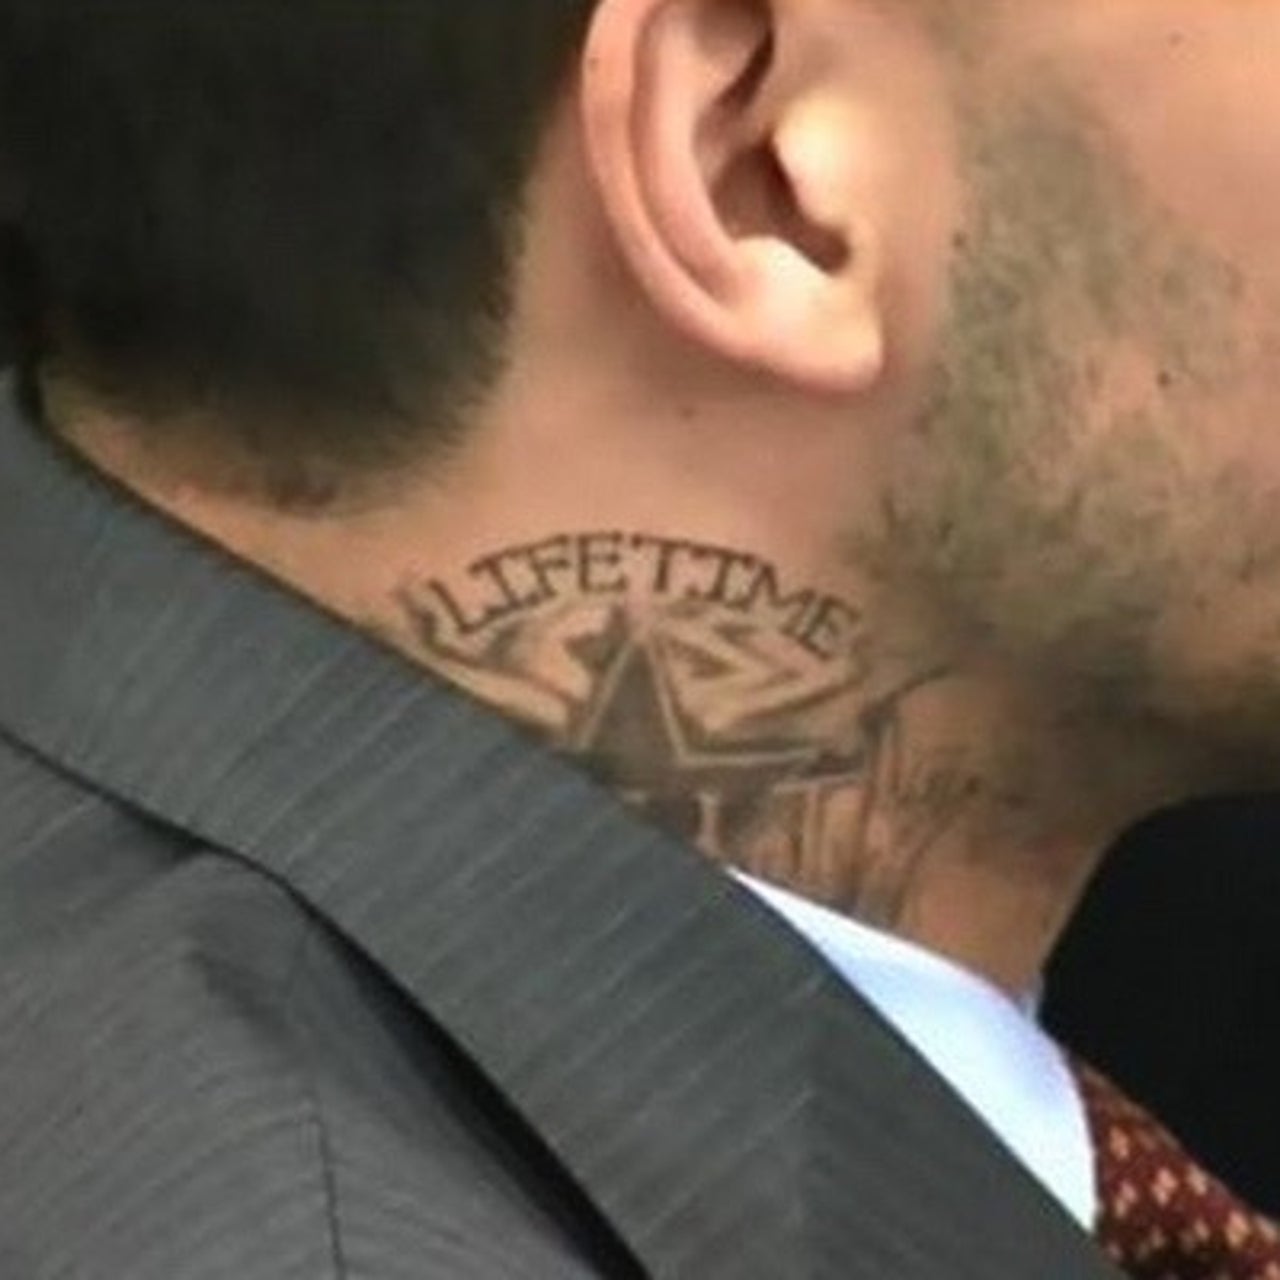 Aaron Hernandez got new neck tattoo in prison